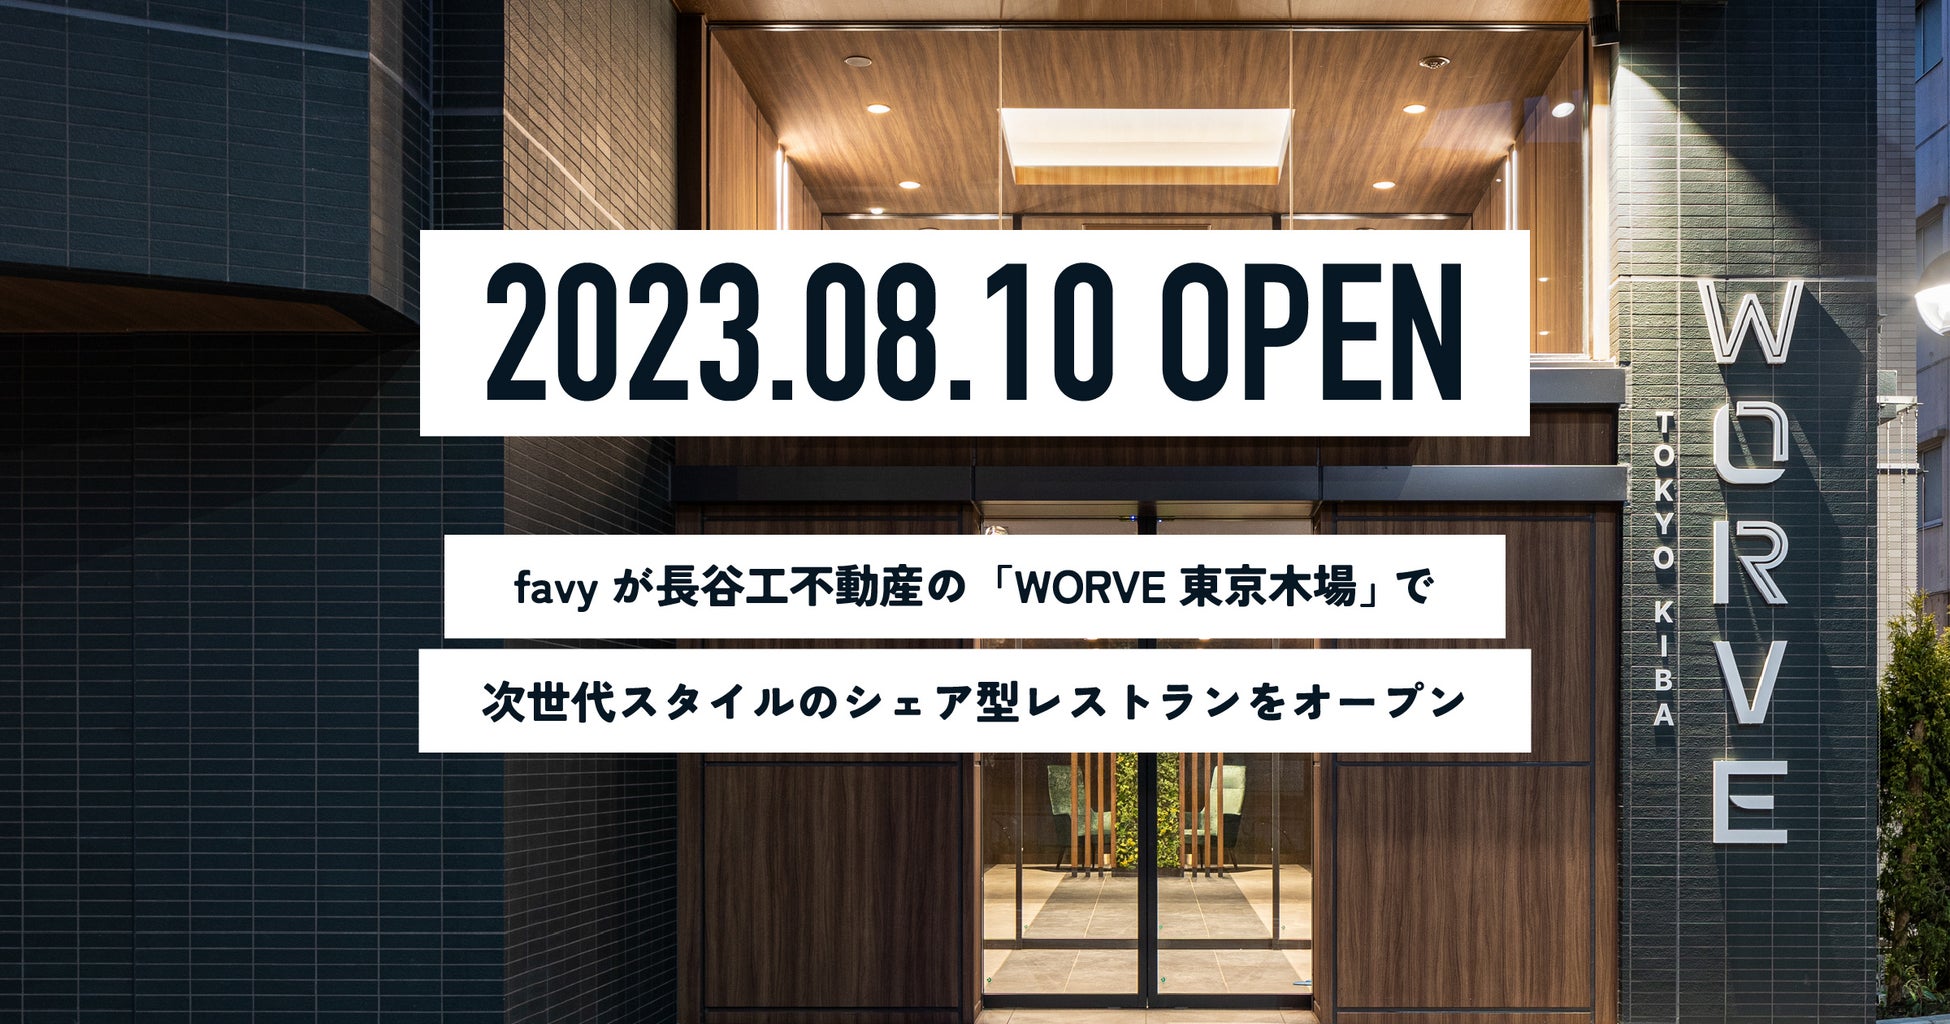 favy、8月10日に長谷工不動産の「WORVE東京木場」で次世代スタイルのシェア型レストランをオープンのサブ画像1